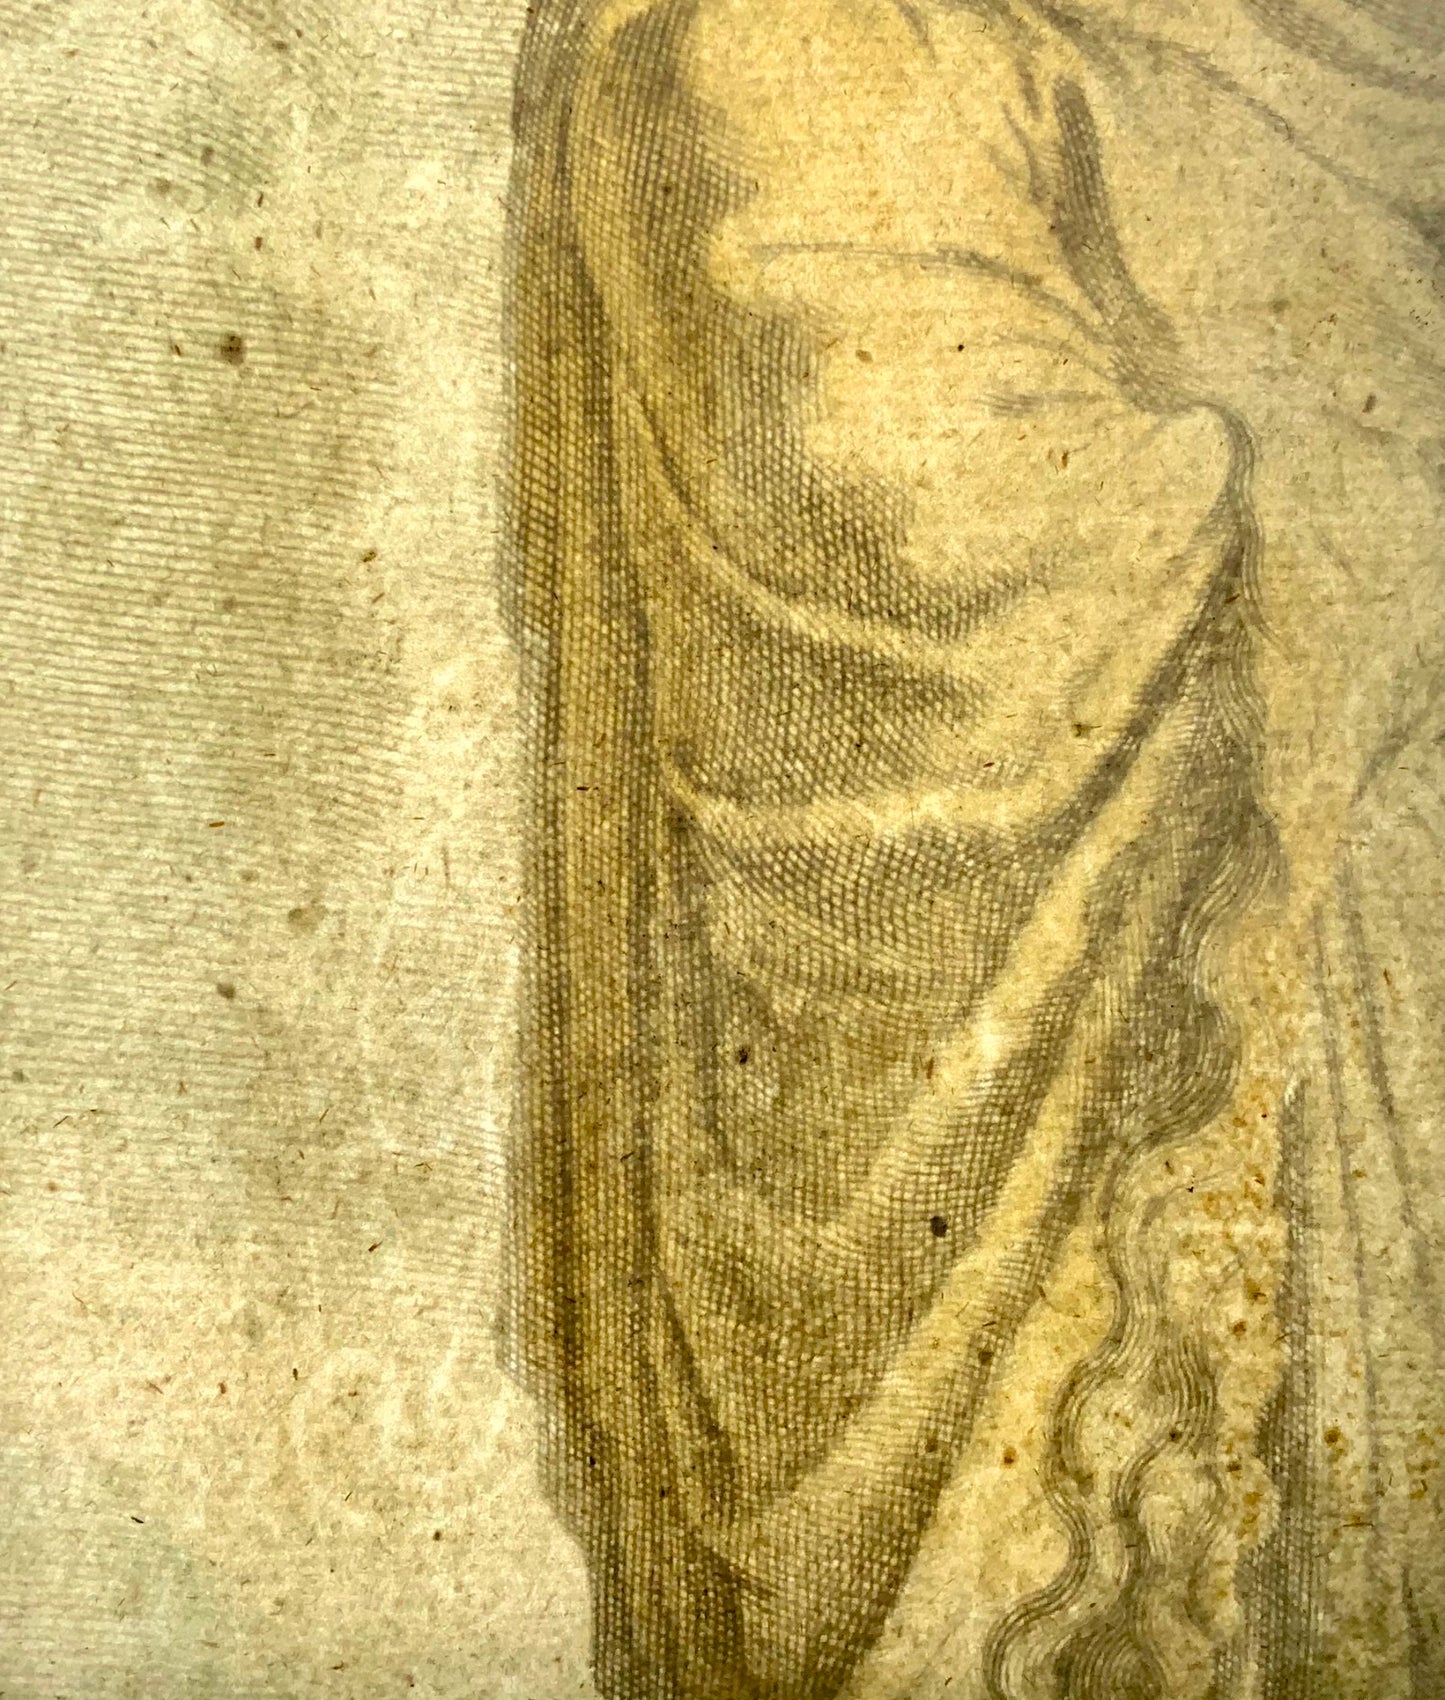 1676 J.J. Sandrart, Collin, Mythology, Cumaean Sibyl